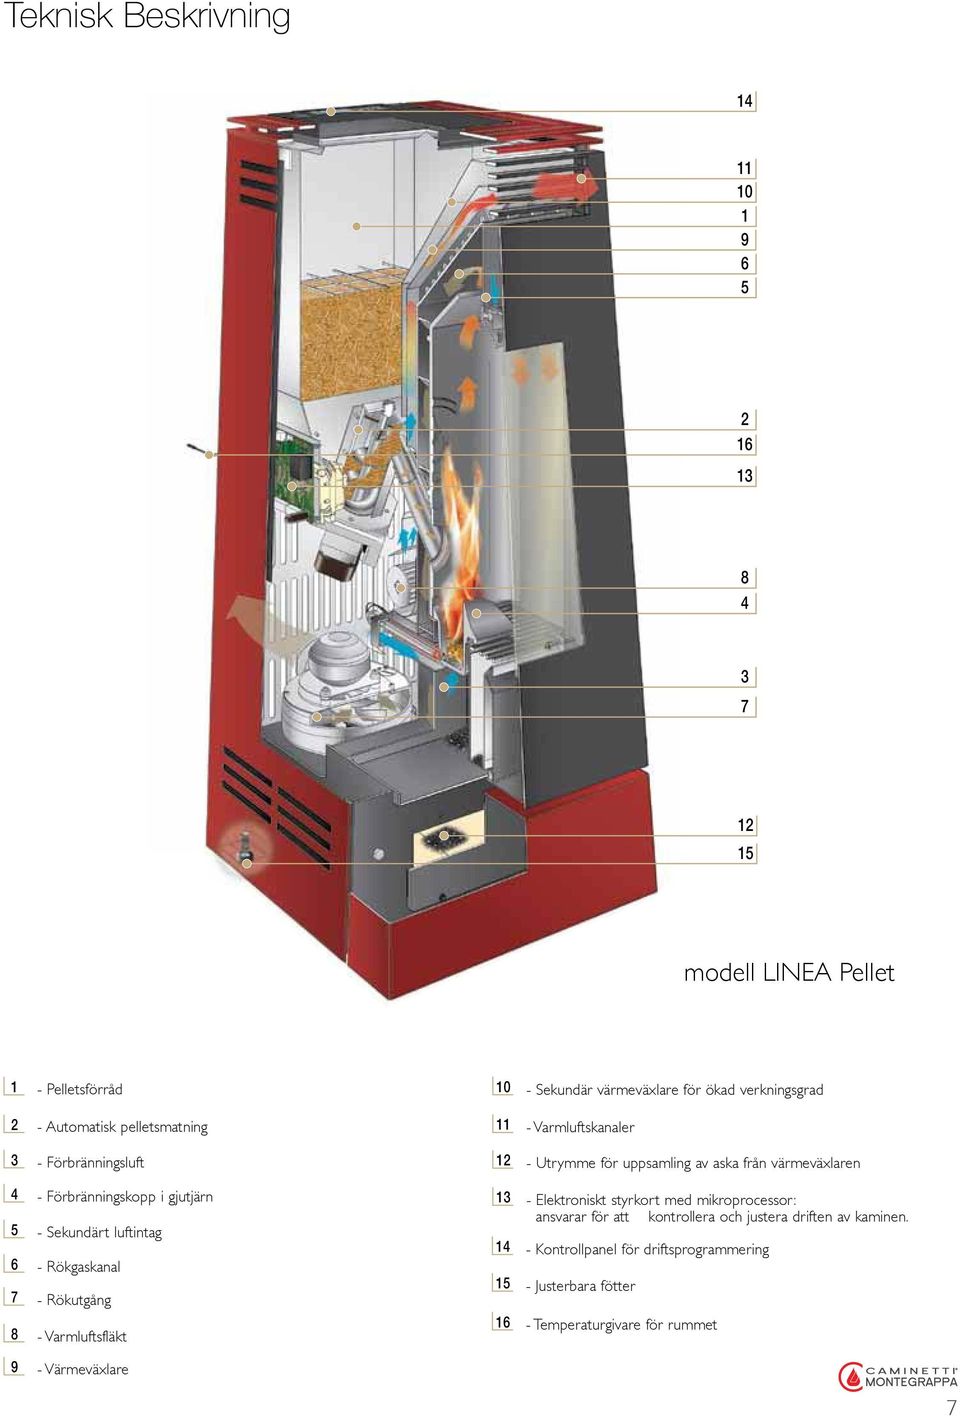 Förbränningskopp i gjutjärn - Sekundärt luftintag - Rökgaskanal - Rökutgång - Varmluftsfläkt 13 14 15 16 - Elektroniskt styrkort med mikroprocessor: